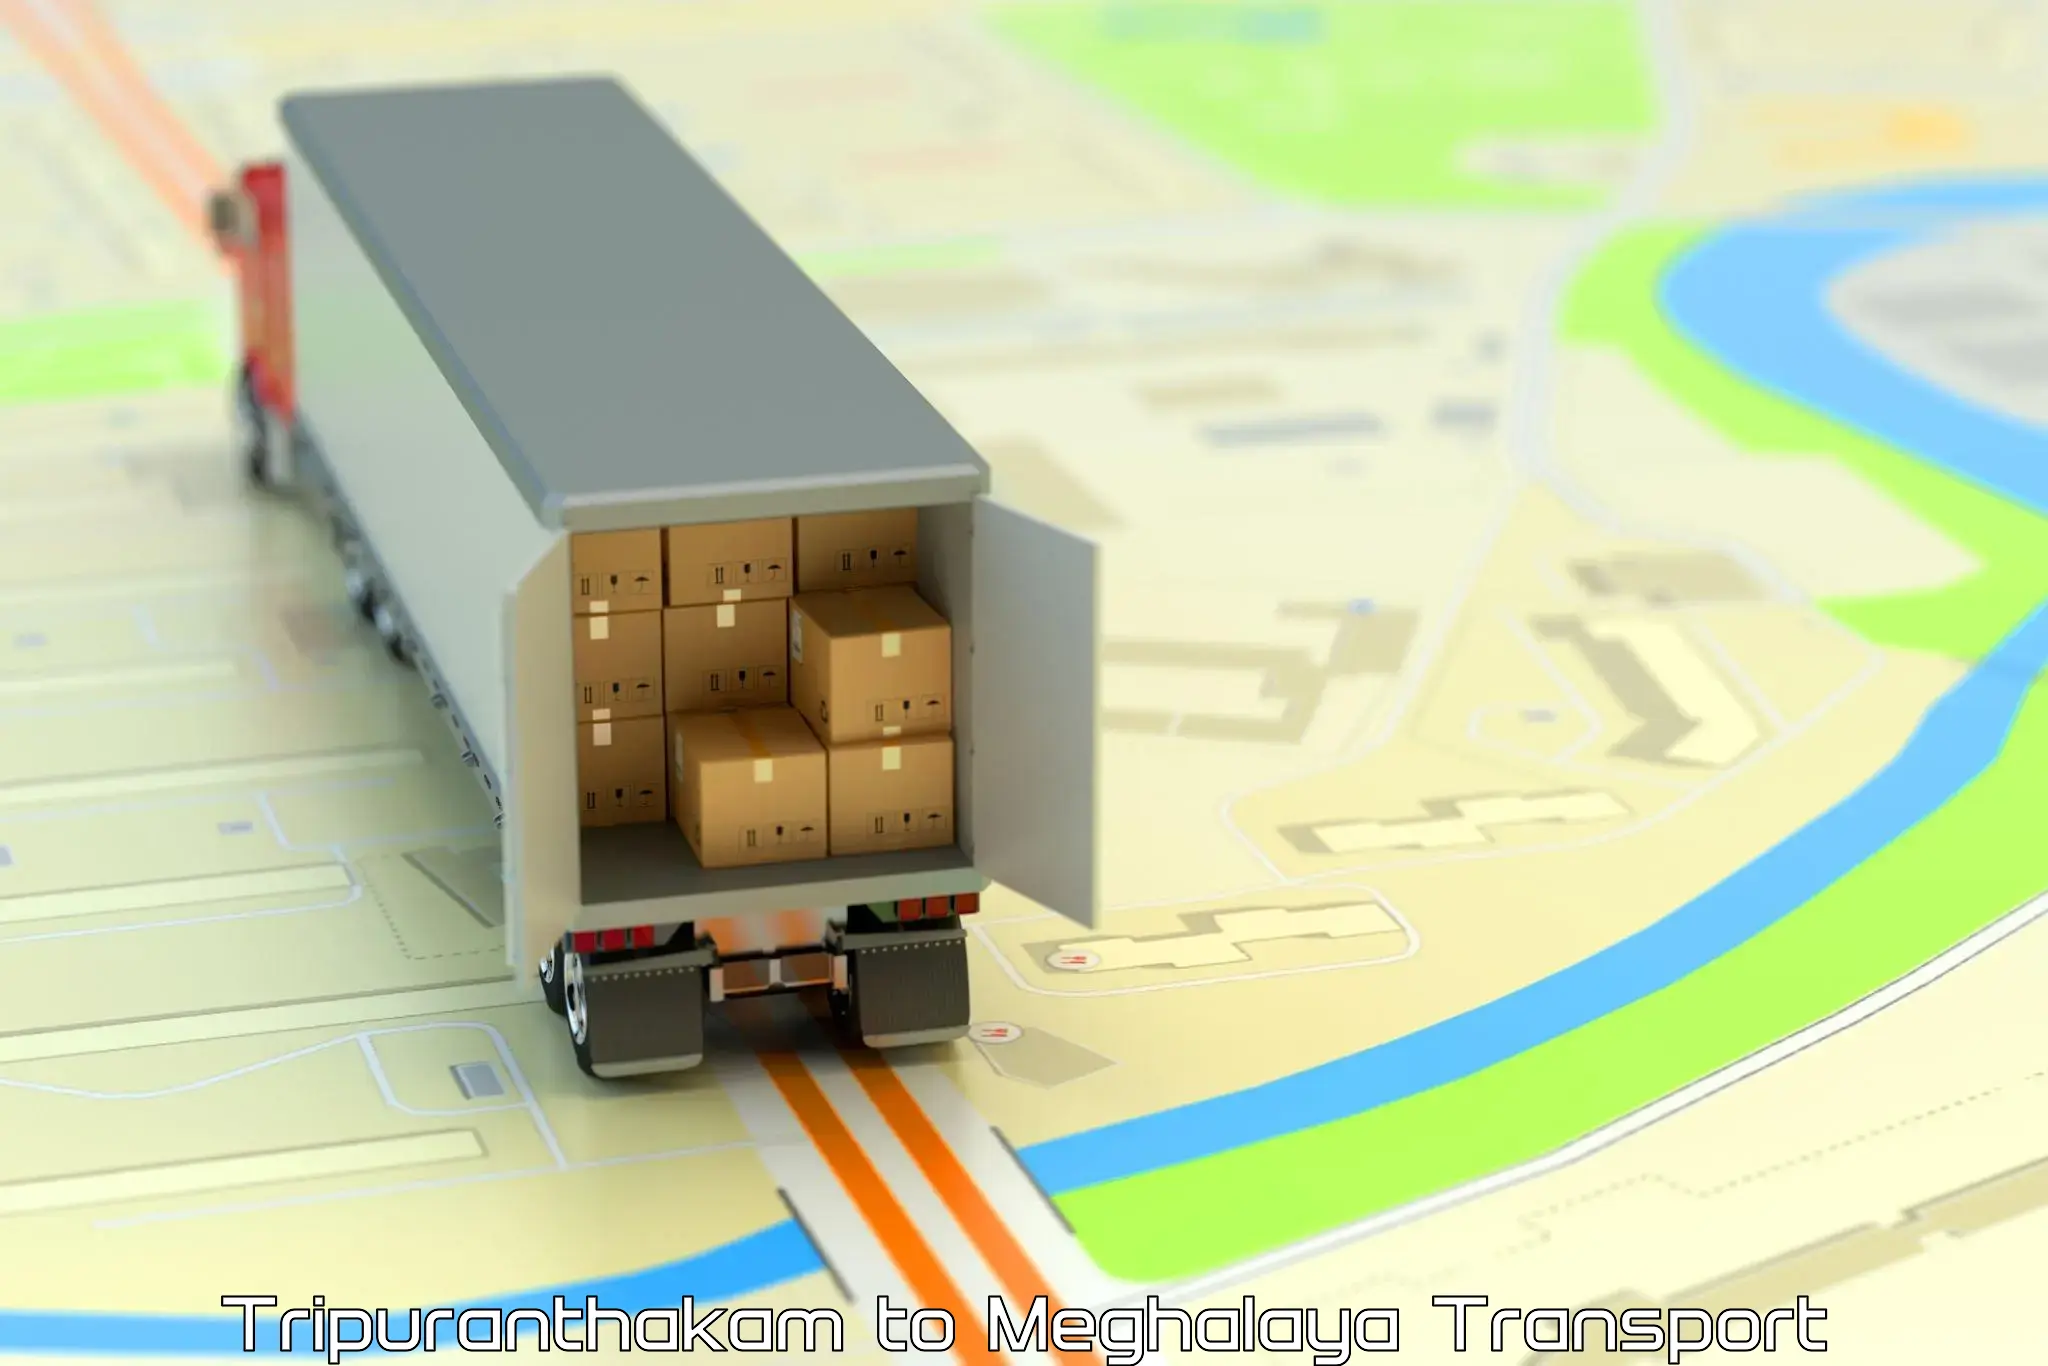 International cargo transportation services Tripuranthakam to Nongstoin